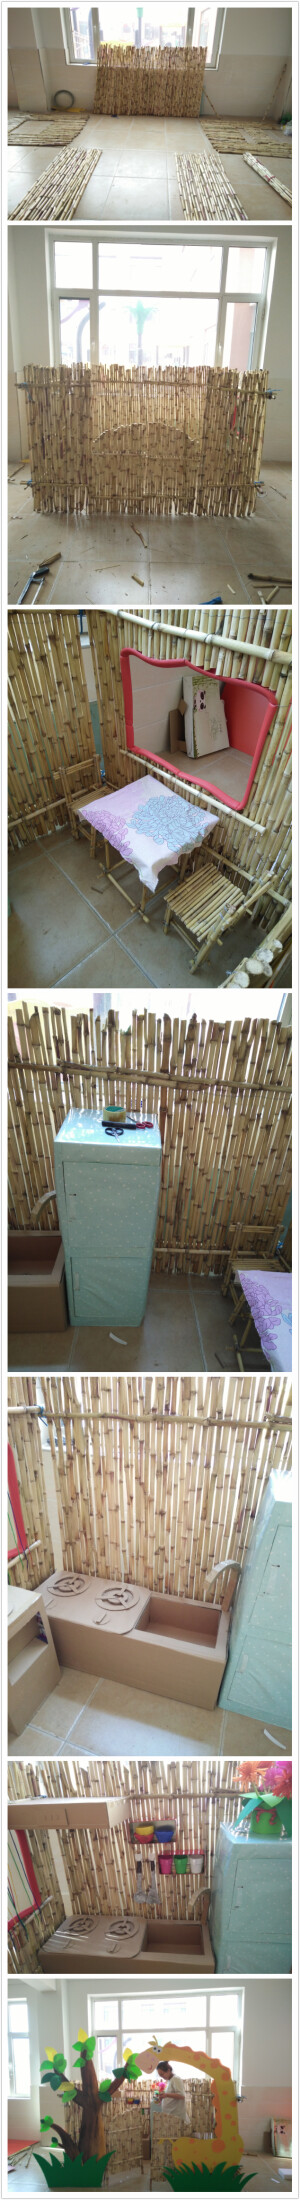 幼儿园自制小木屋